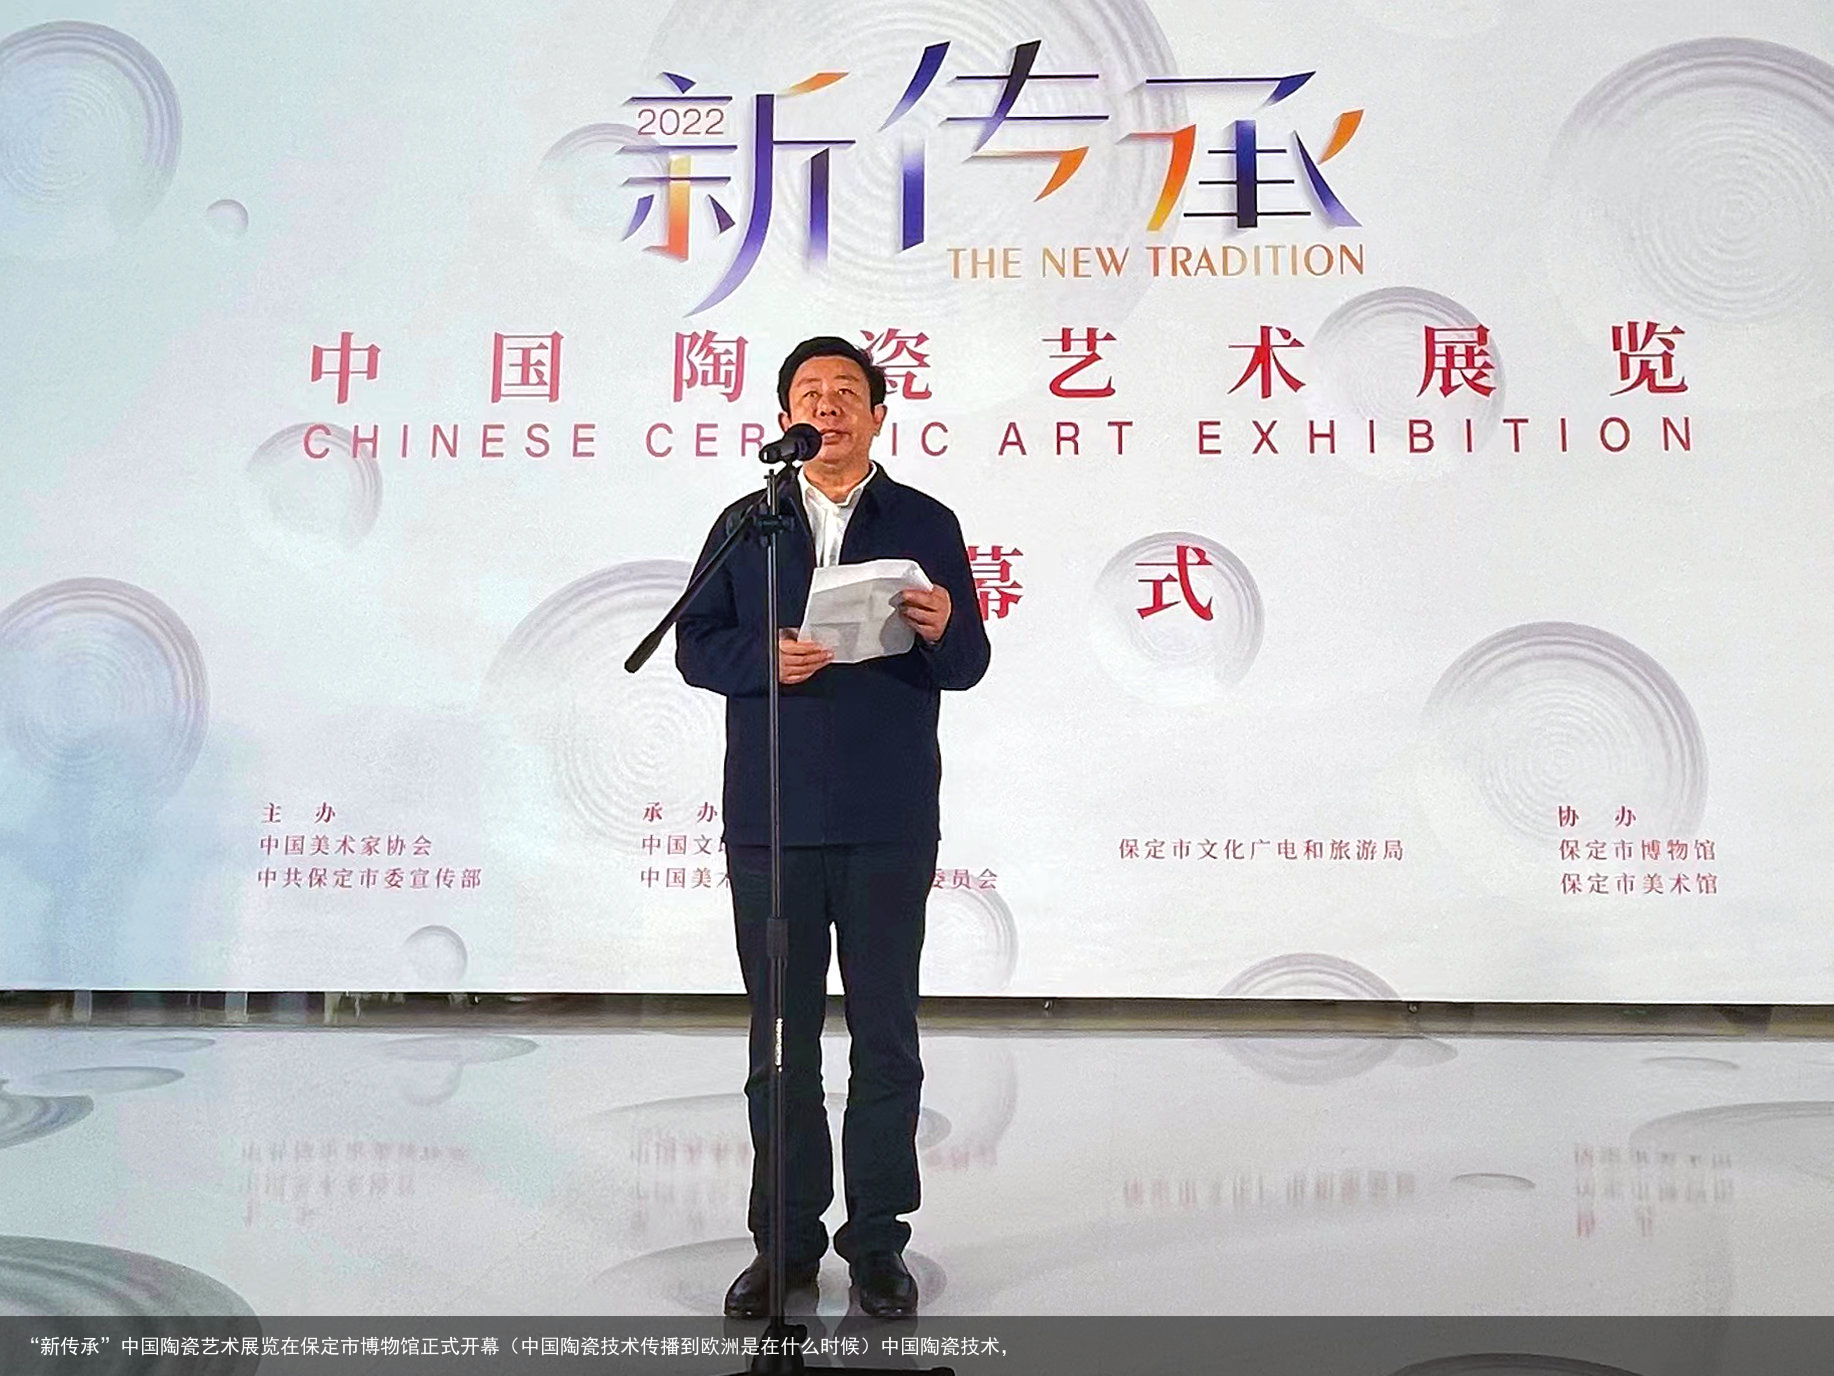 “新传承”中国陶瓷艺术展览在保定市博物馆正式开幕（中国陶瓷技术传播到欧洲是在什么时候）中国陶瓷技术，